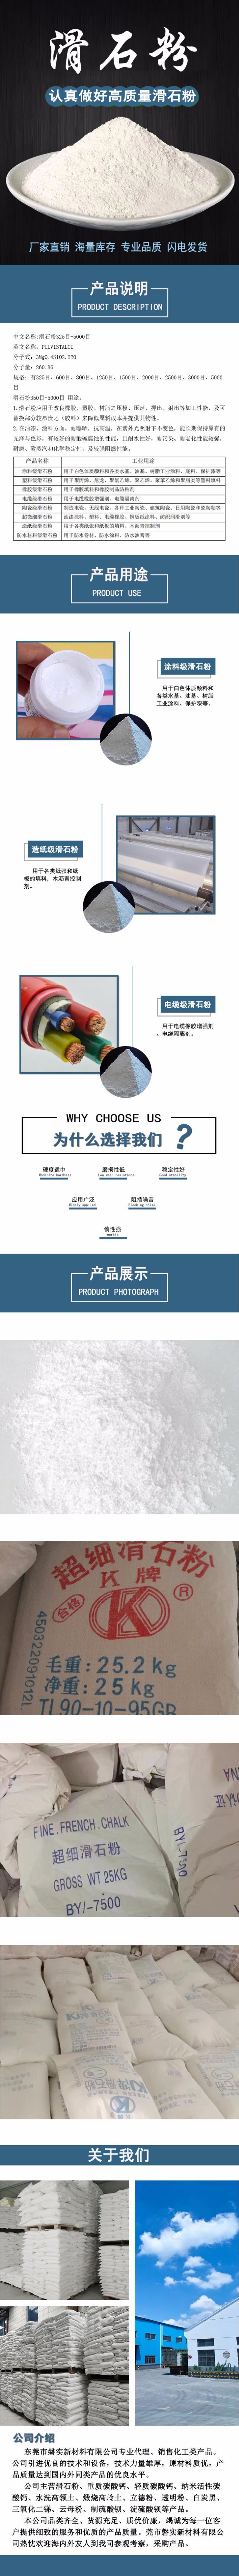 东莞滑石粉专业滑石粉厂家 价格优惠、免费提供样品专人上下货示例图1